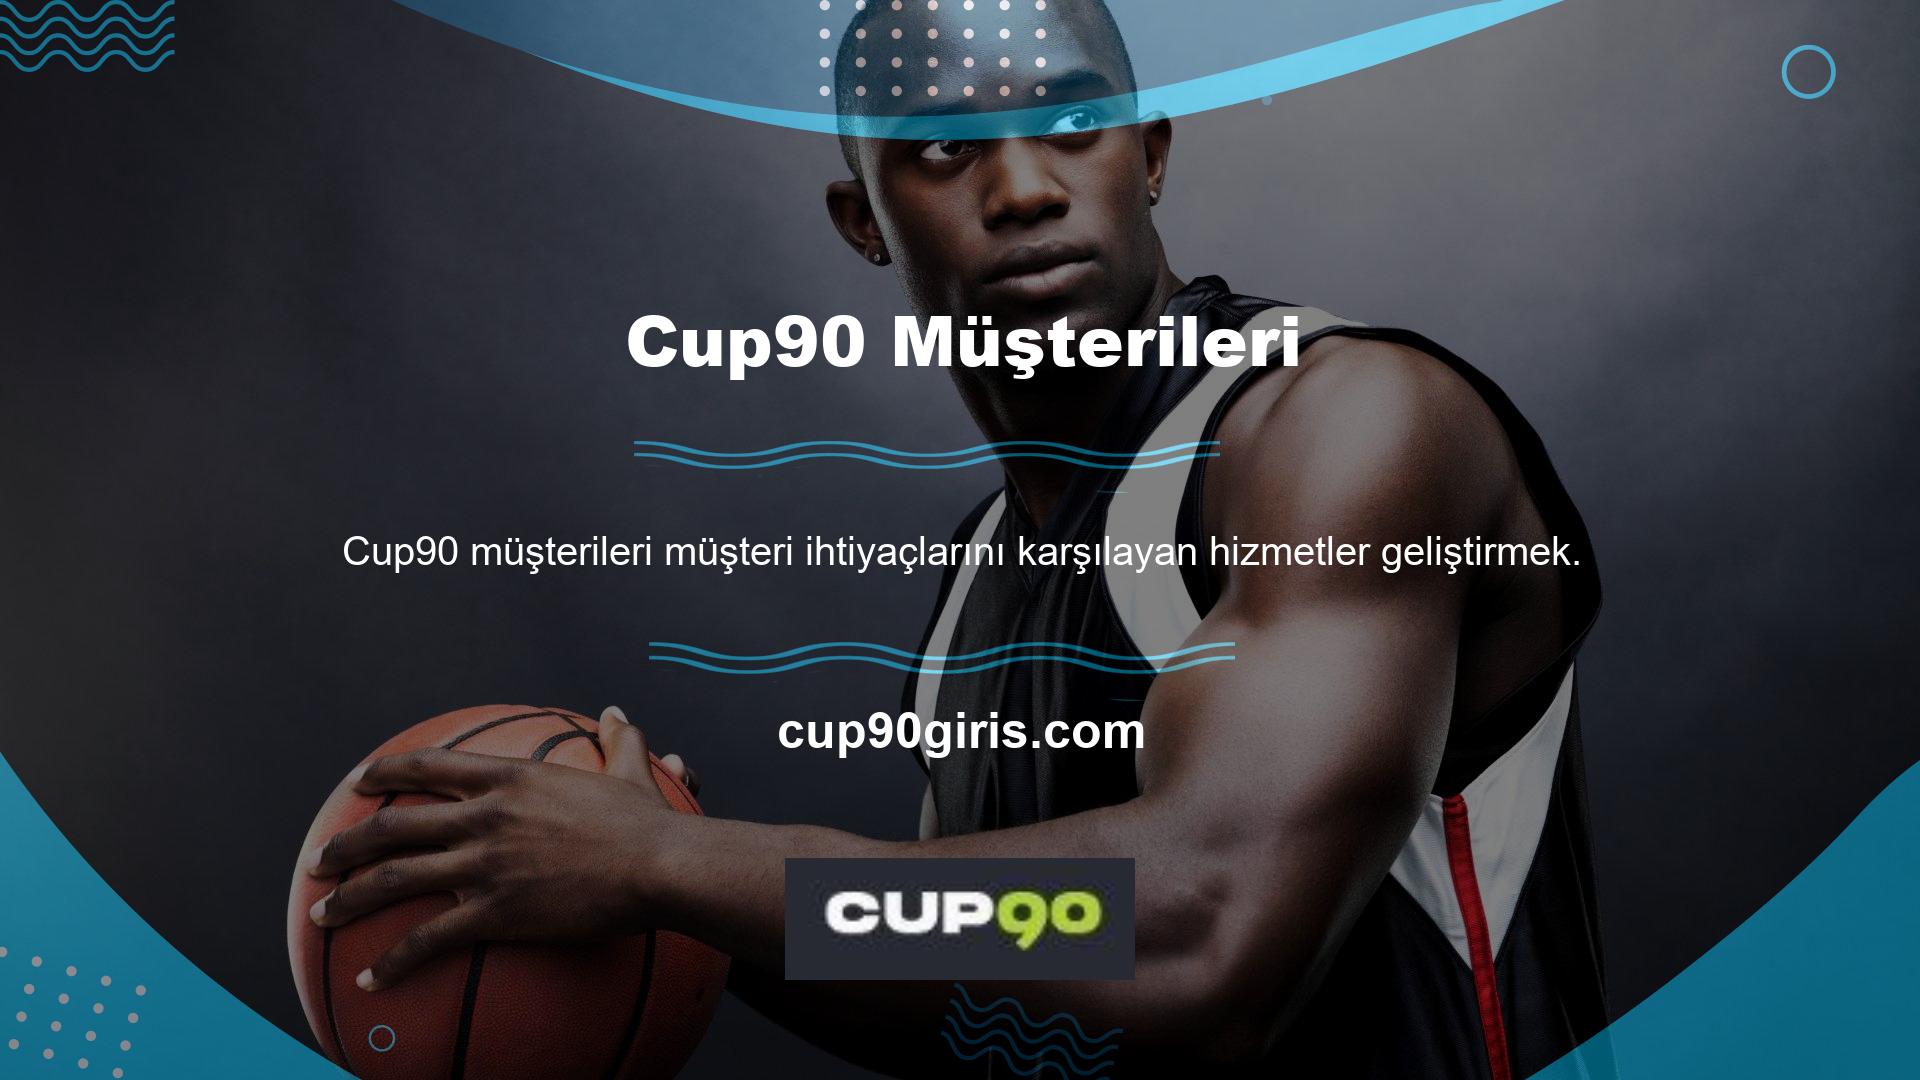 Cup90 ayrıca casino, canlı bahis, casinolar ve çevrimiçi casino oyunlarına ilişkin detaylarıyla da öne çıkıyor